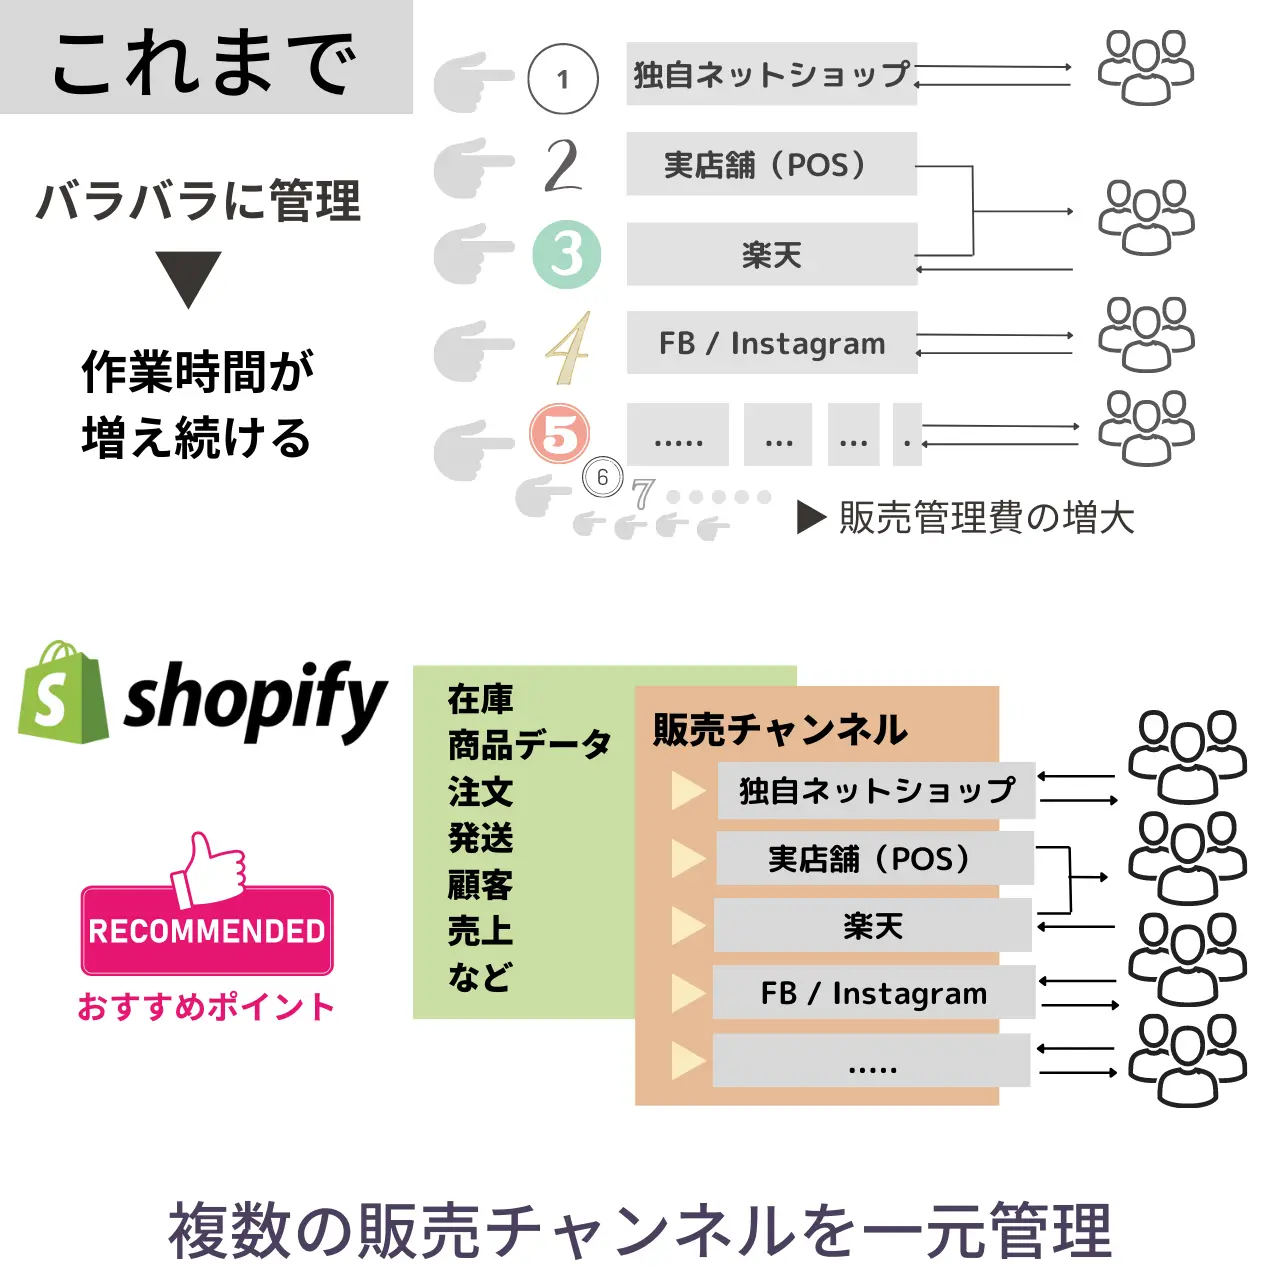 shopifyは、複数の販売チャンネルを一元管理できるECカートシステムである説明図